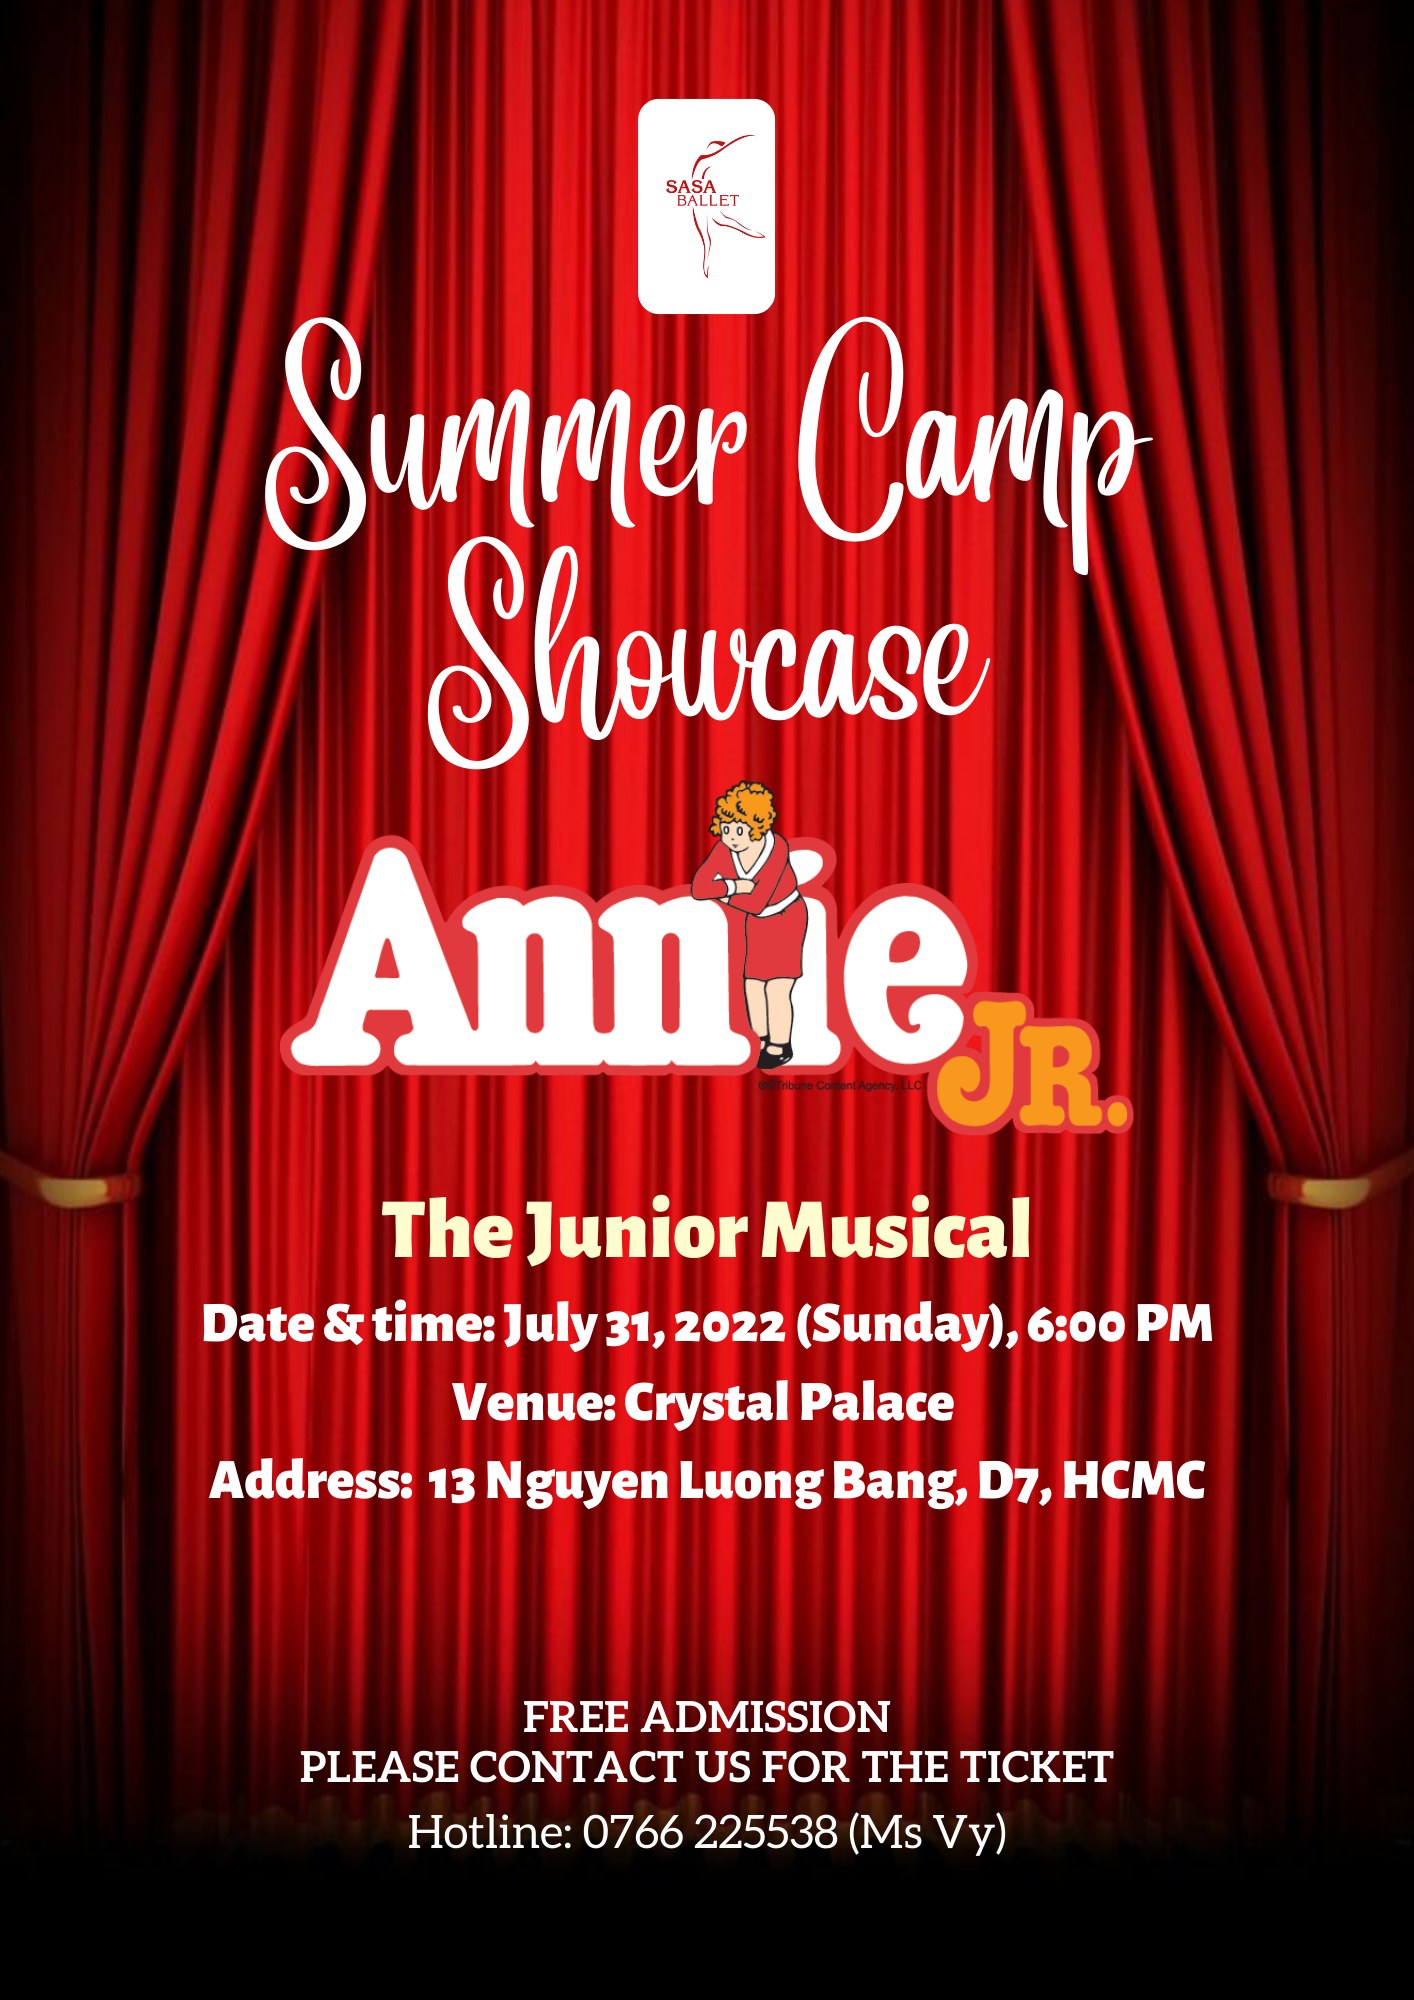 Summer Camp Showcase 2022 - Annie Jr. by Sasa Ballet